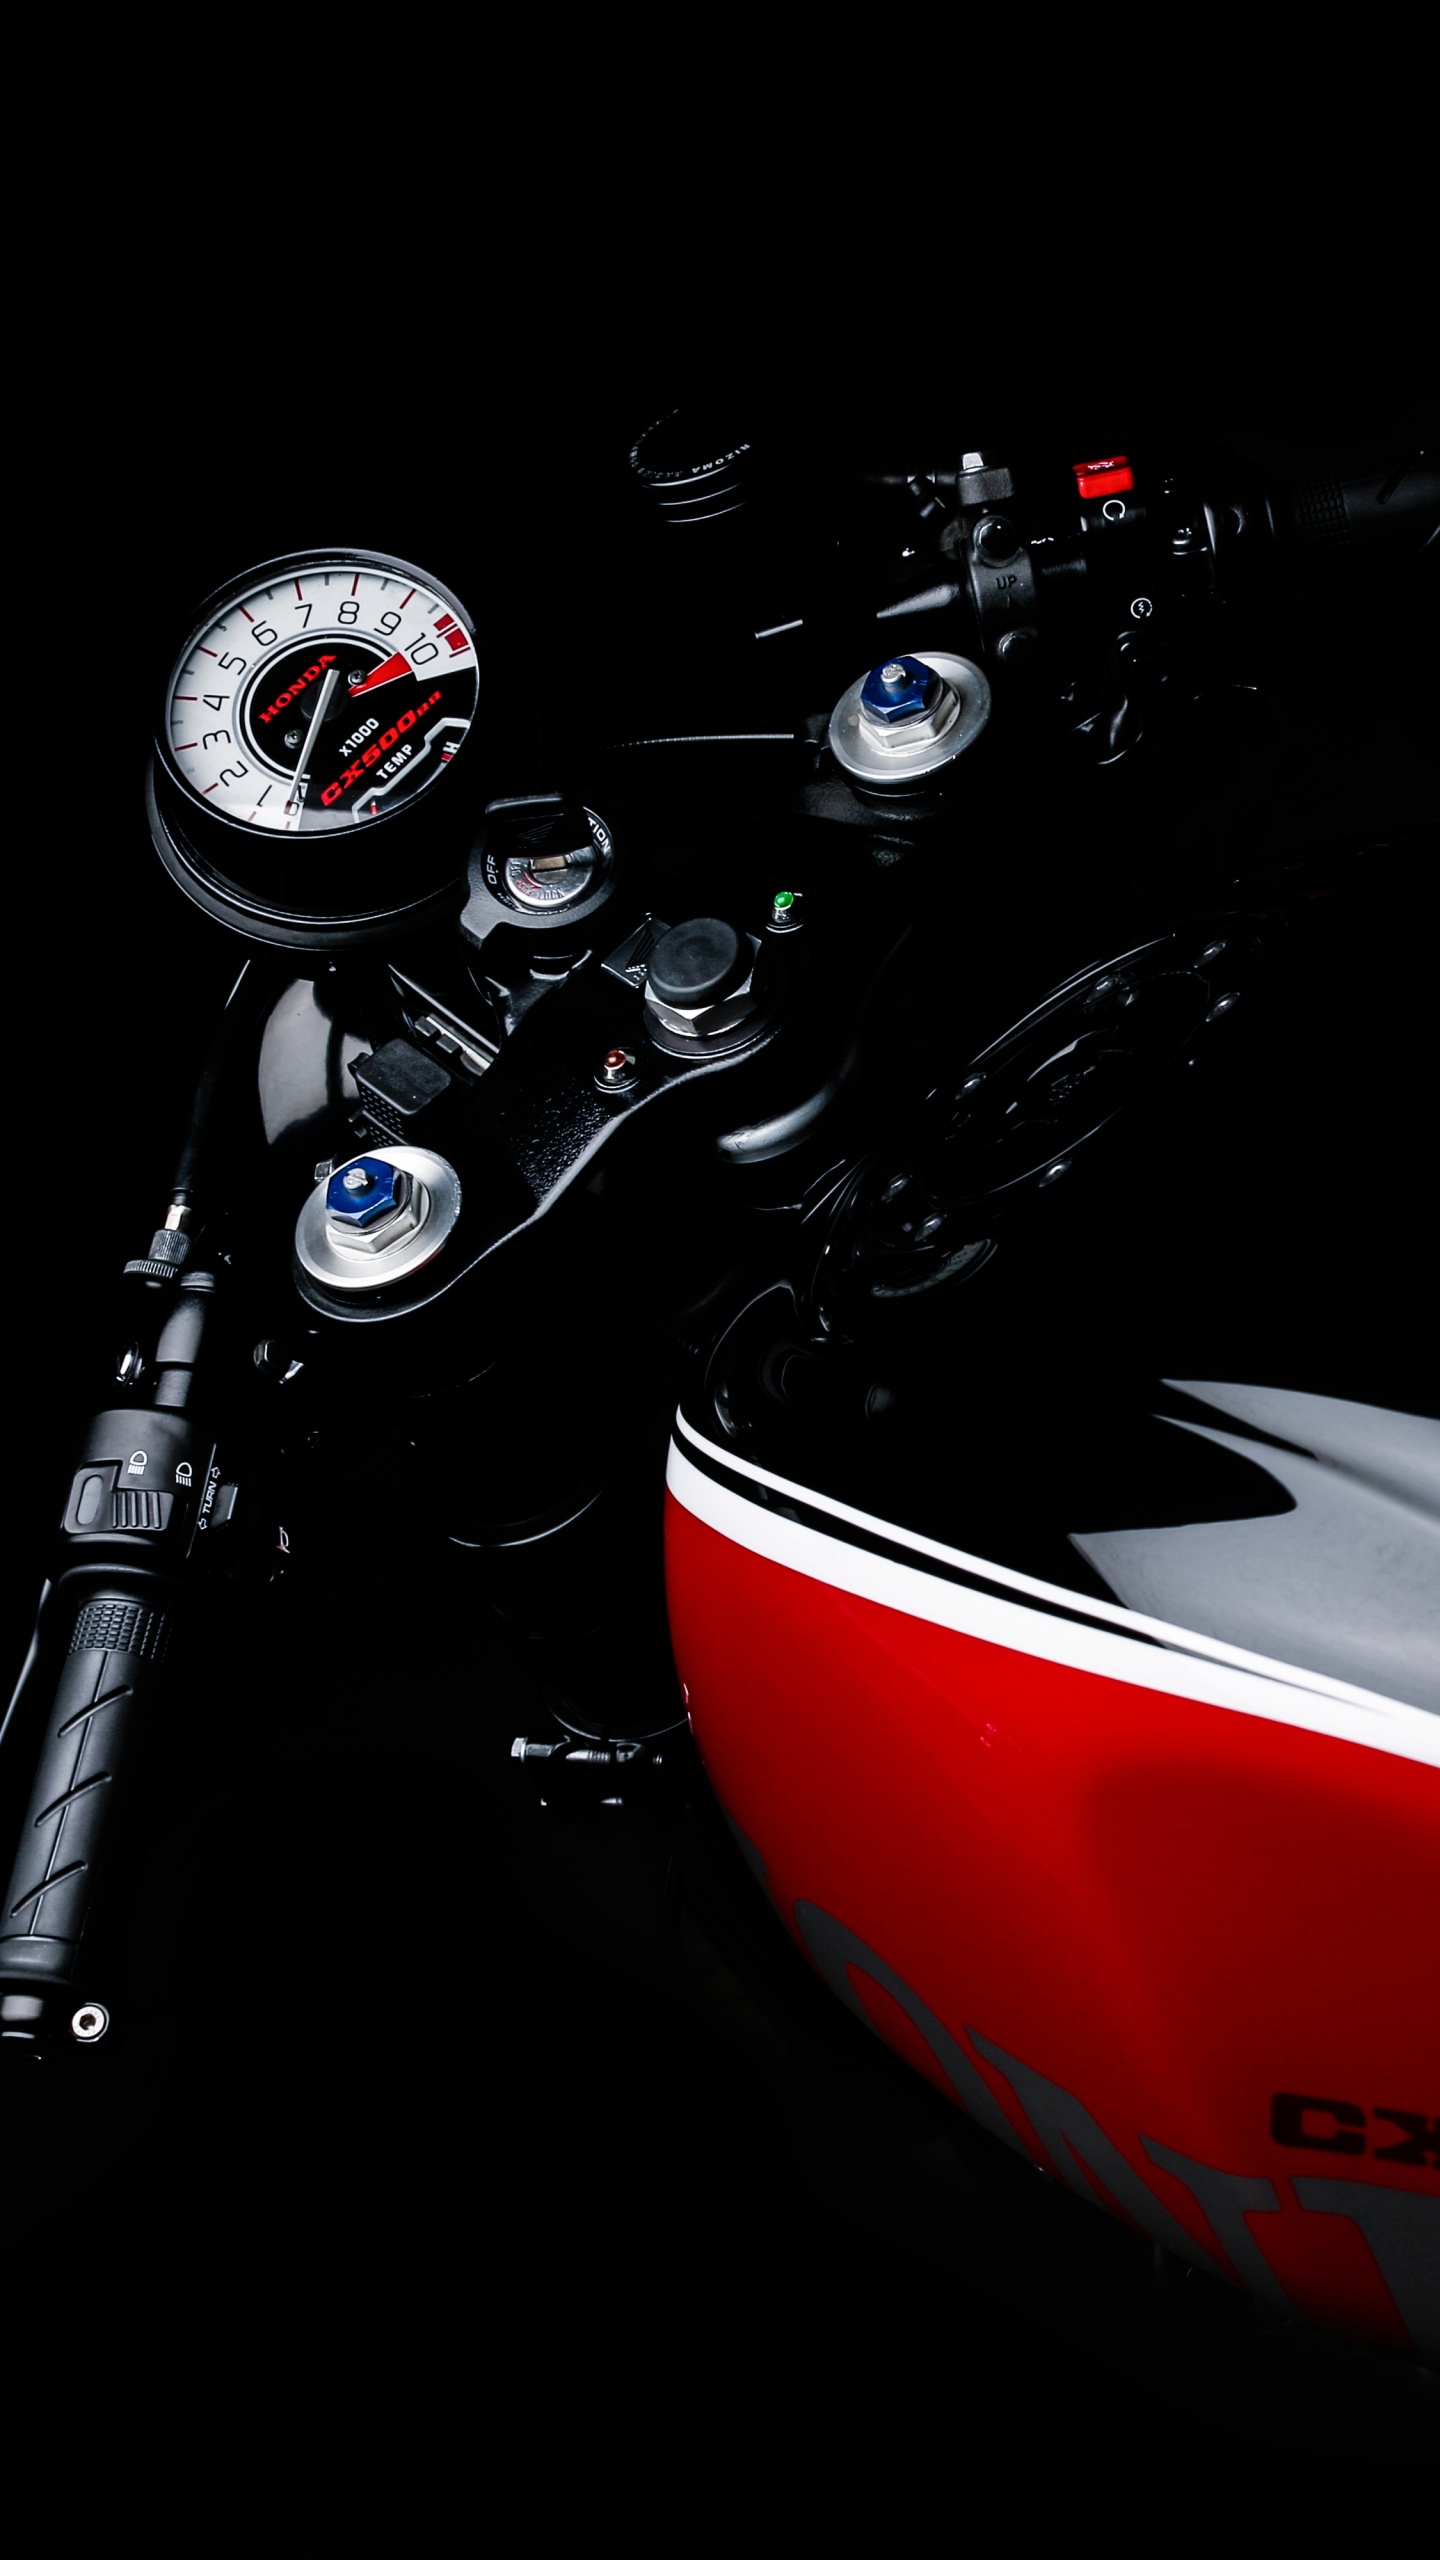 Motocicleta Honda Roja y Negra. Wallpaper in 1440x2560 Resolution